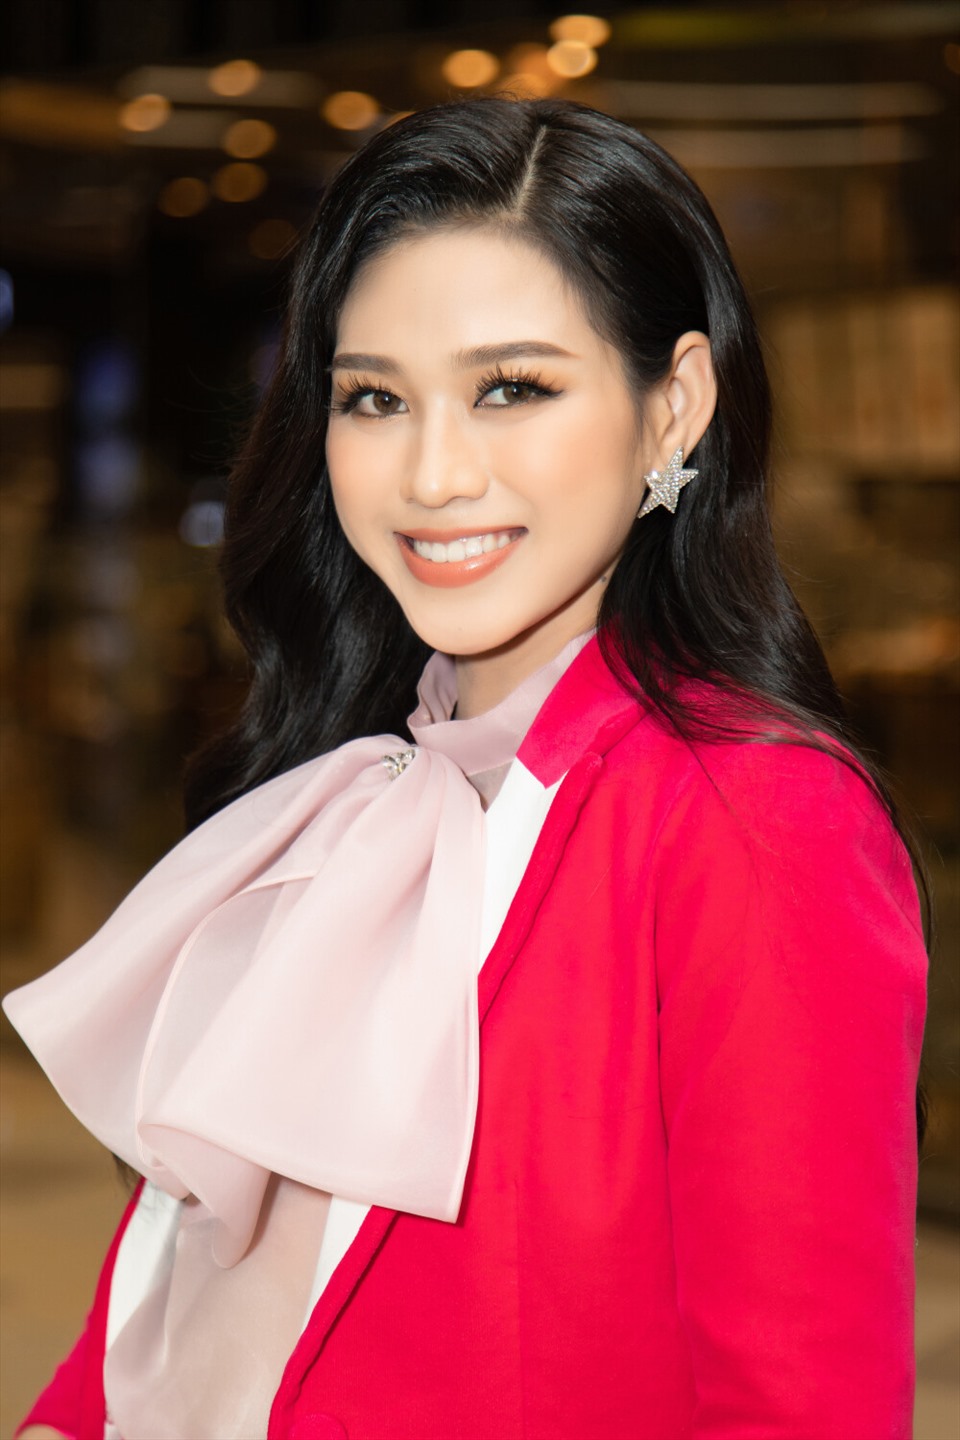 Mới đây, Hoa hậu Việt Nam Đỗ Thị Hà đã góp mặt tại sự kiện ra mắt phim điện ảnh Em là của em vào dịp đầu năm 2021